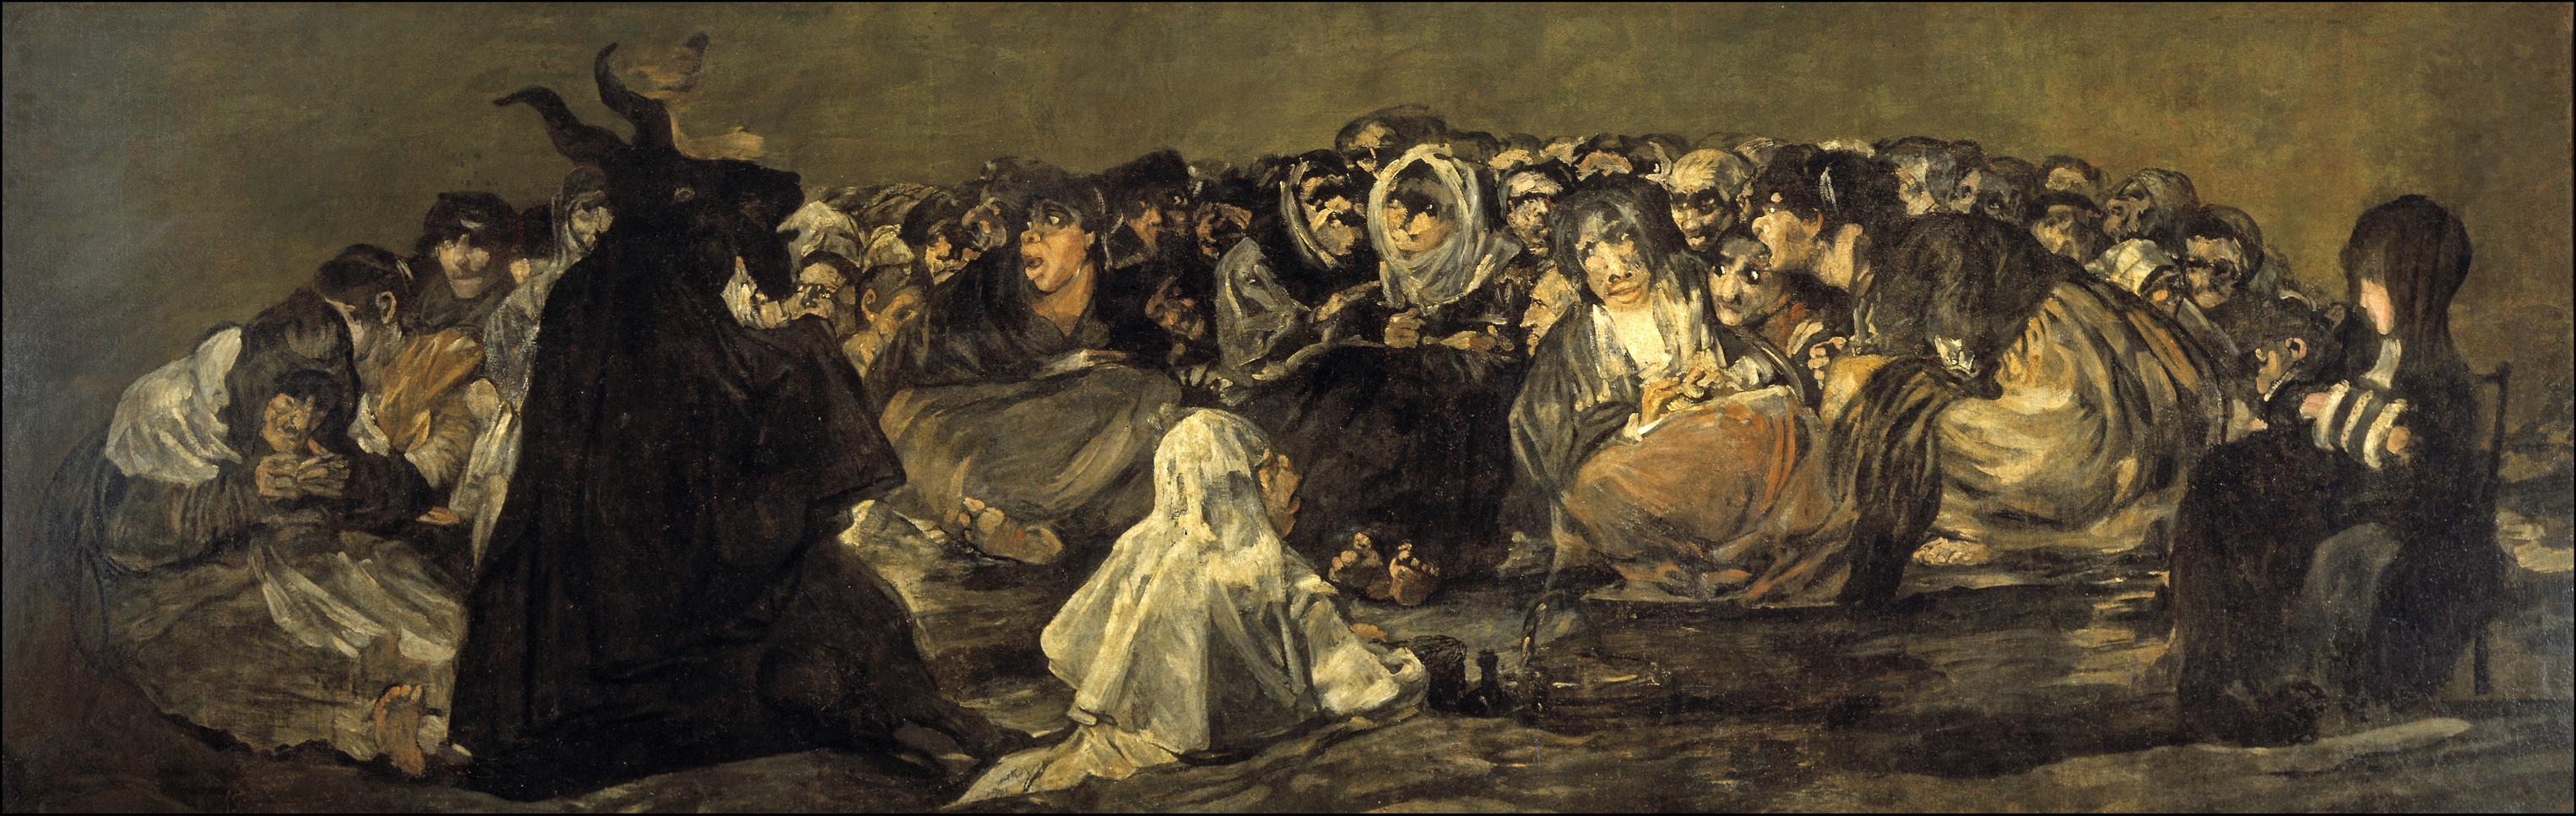 "O Grande Bode", de Francisco de Goya